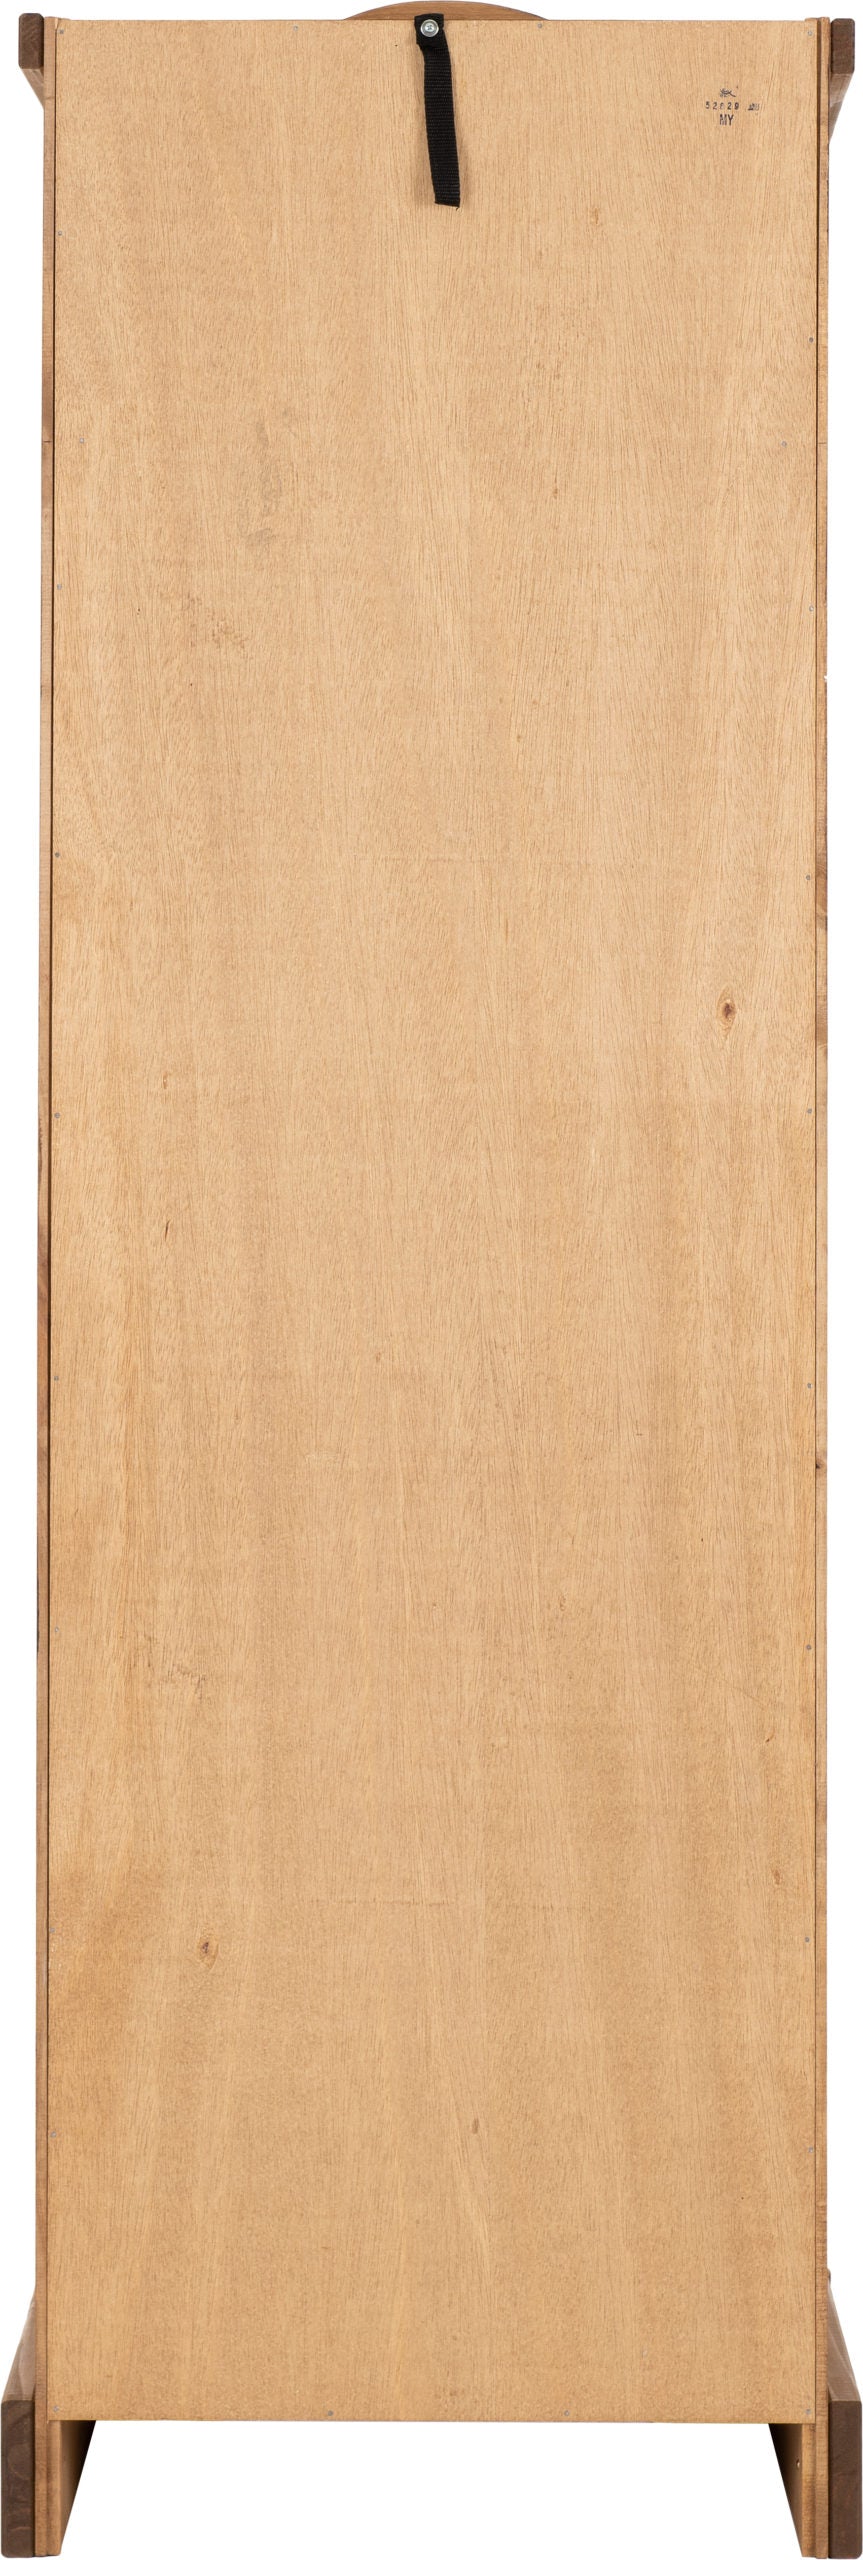 Corona 1 Door Wardrobe - Distressed Waxed Pine - The Right Buy Store